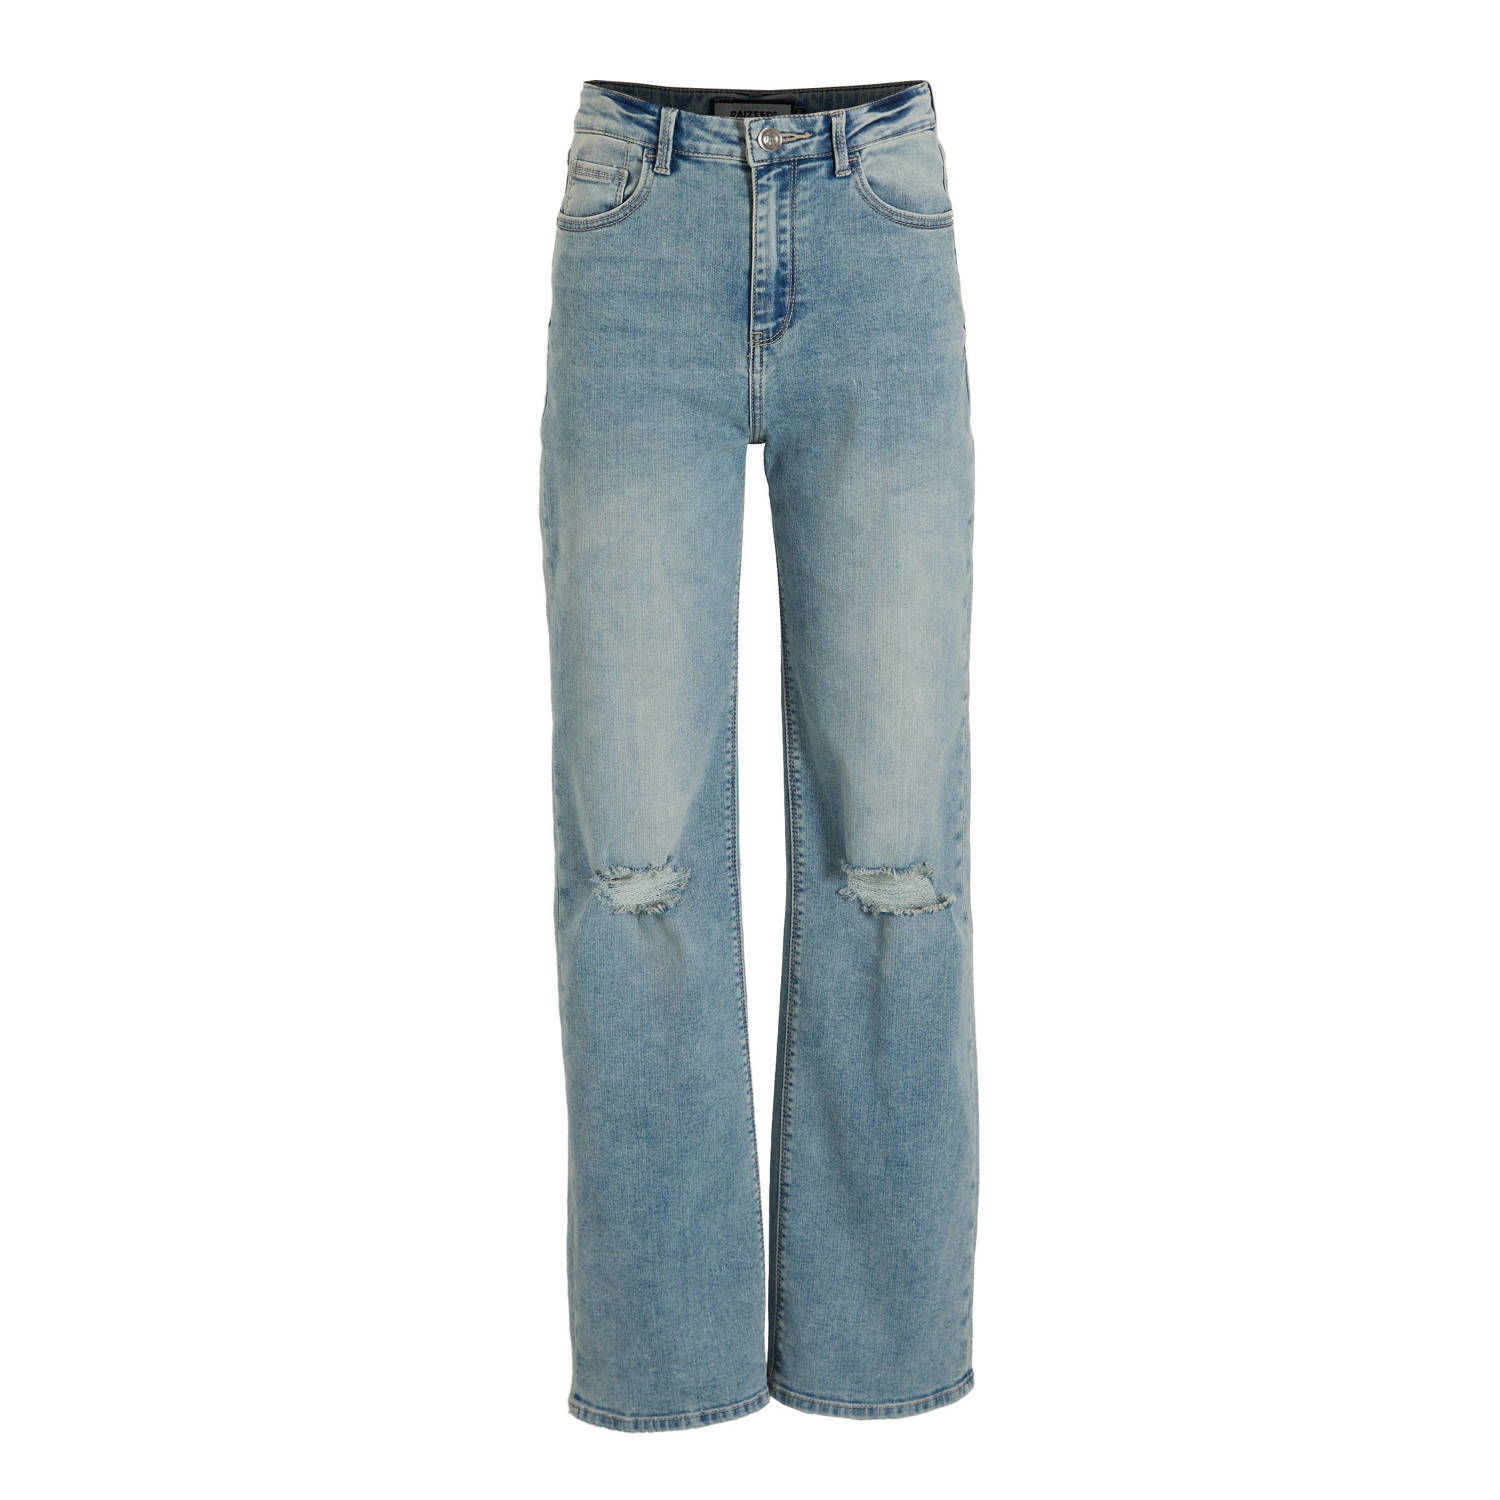 Raizzed wide leg jeans vintage blue denim Blauw Stretchdenim Effen 104